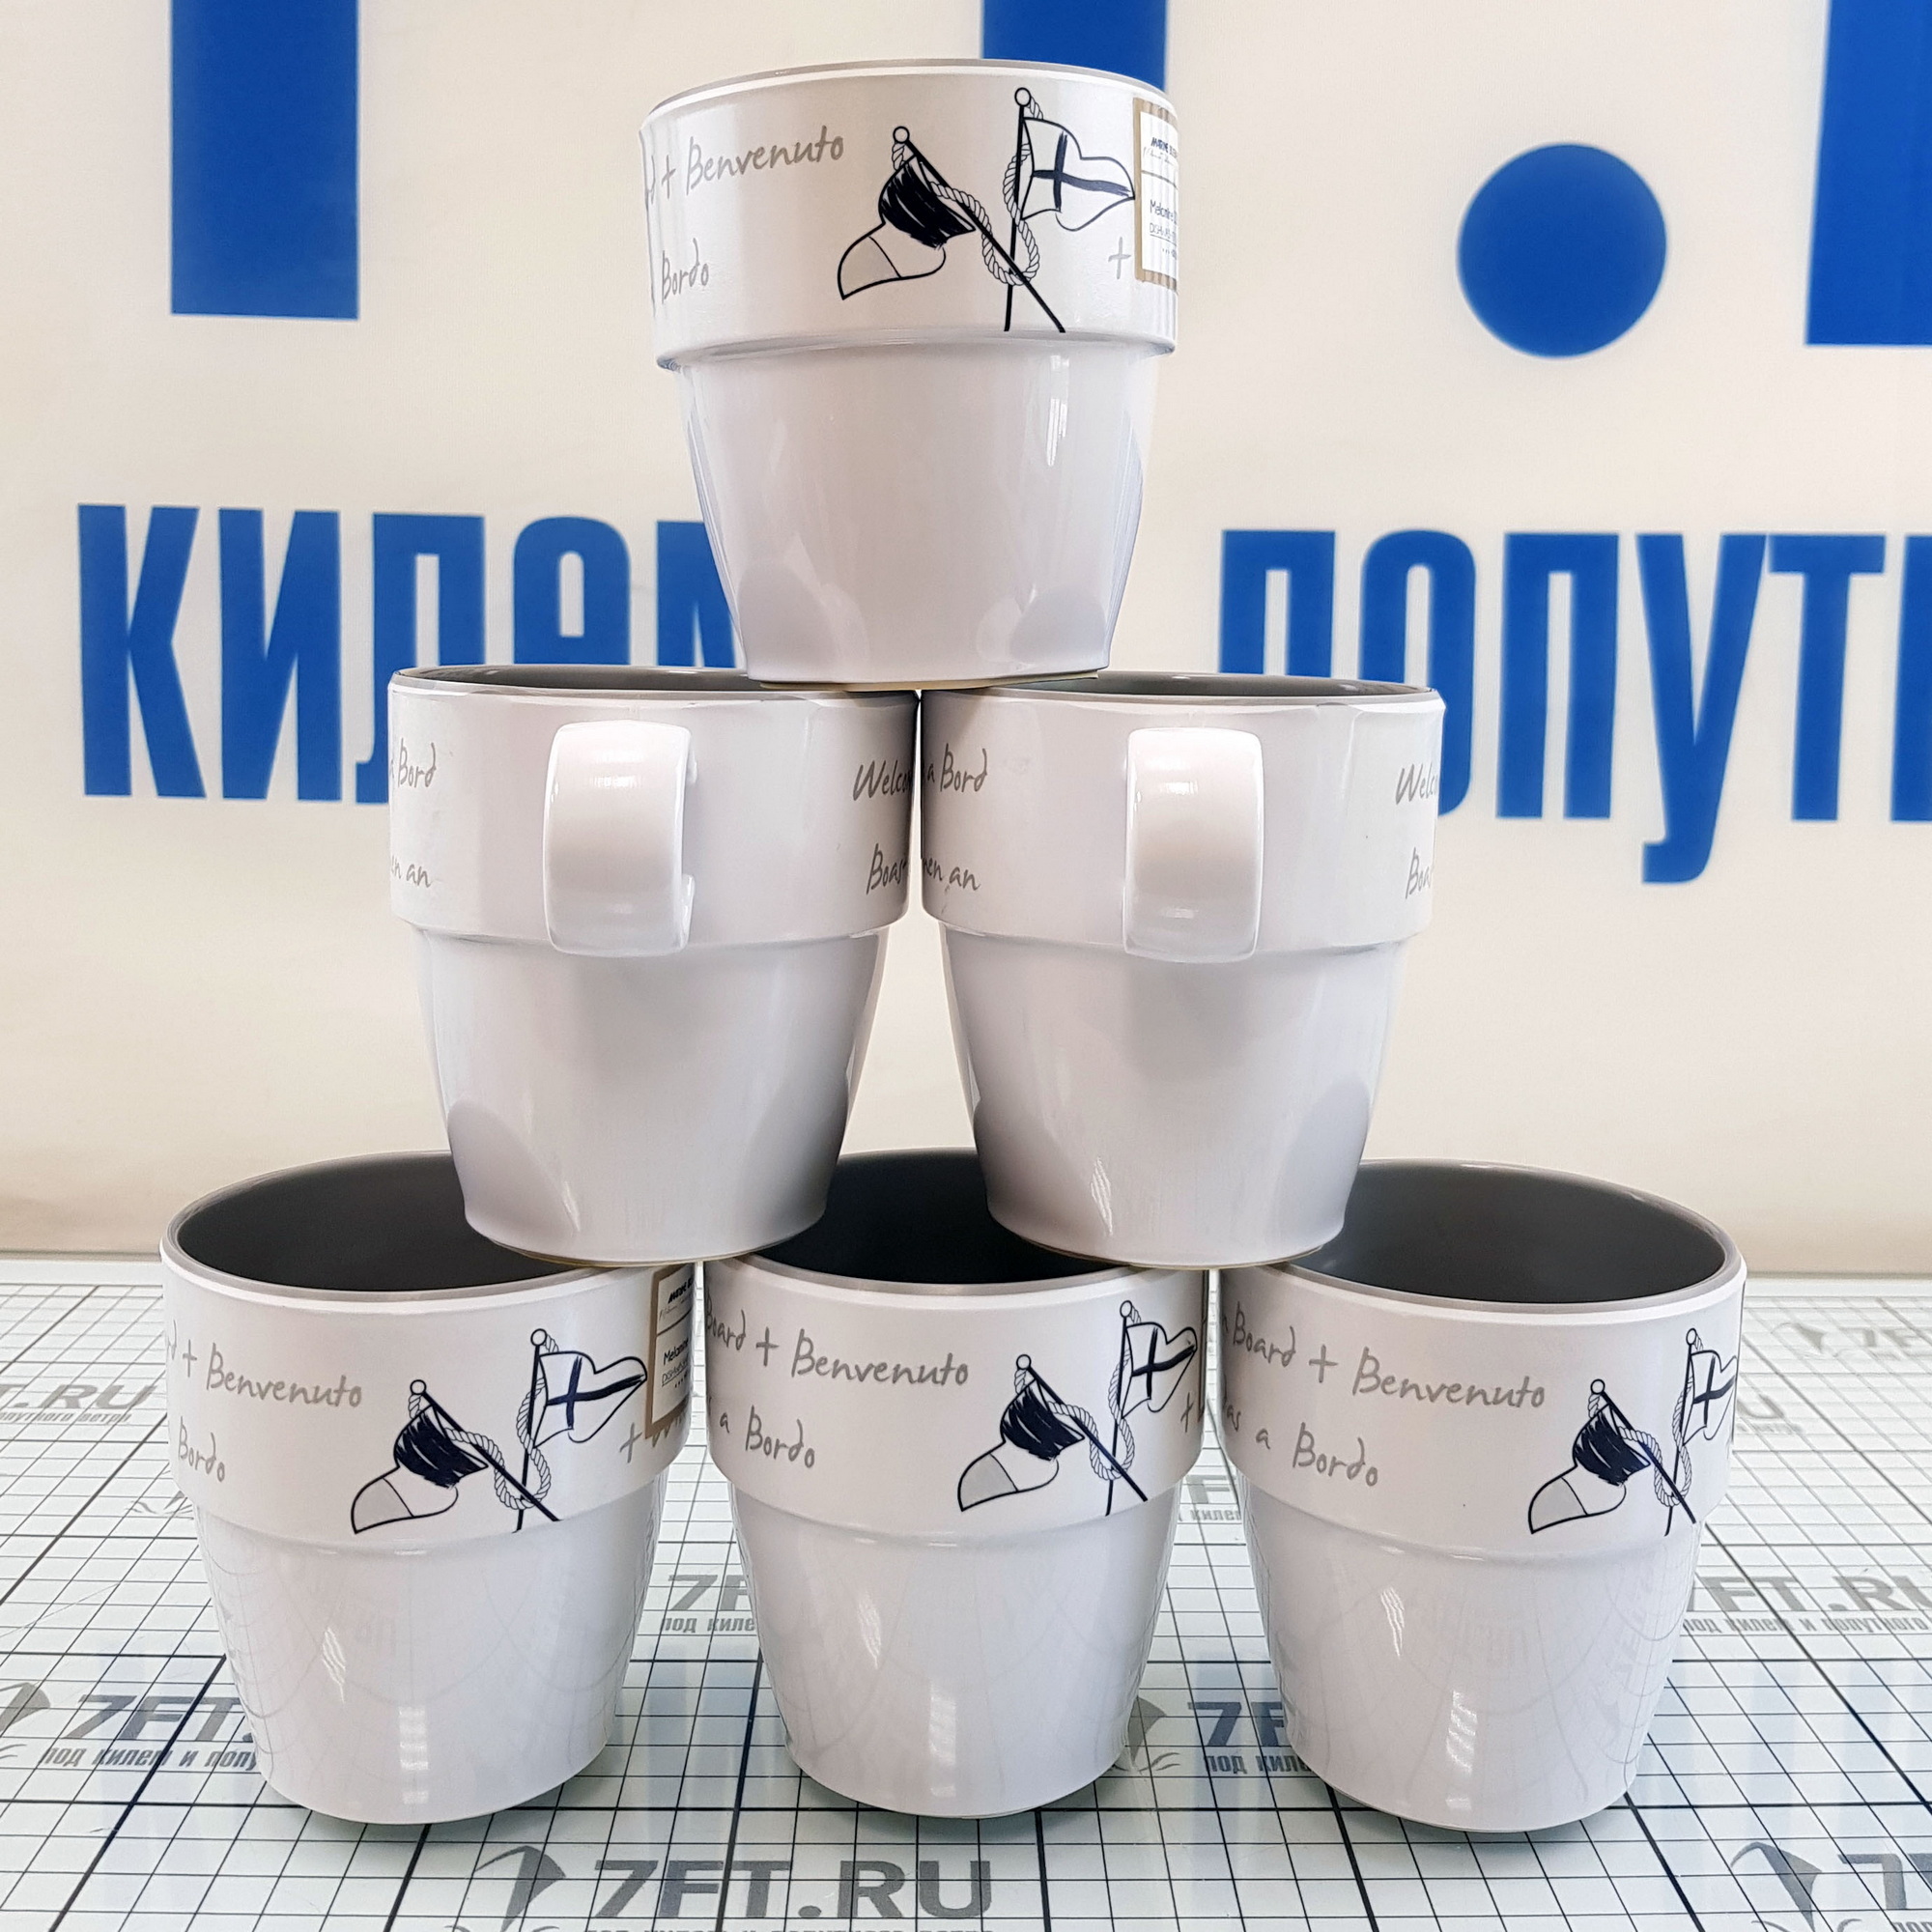 Купить Набор посуды на 6 человек Marine Business Welcome On Board 27144 24 предмета из меламина в сумке 7ft.ru в интернет магазине Семь Футов